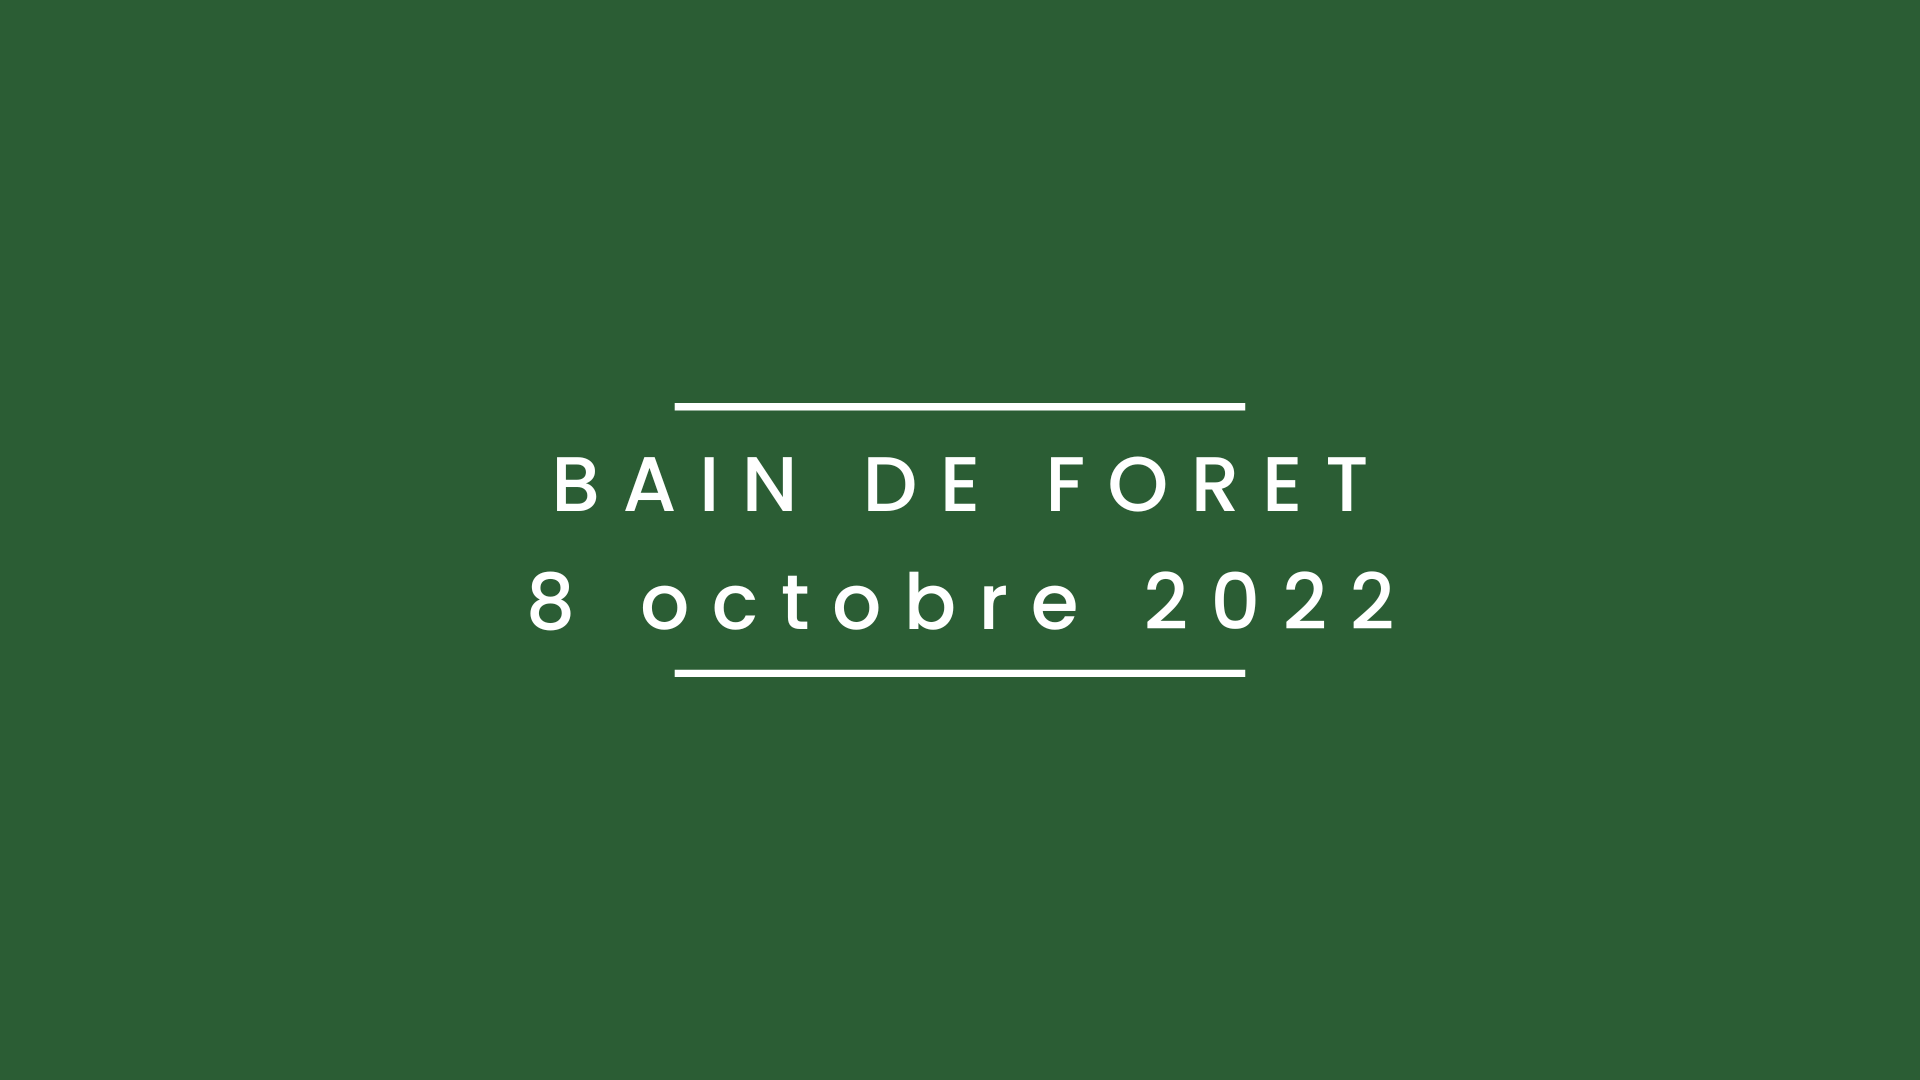 Bain de forêt 8 octobre 2022